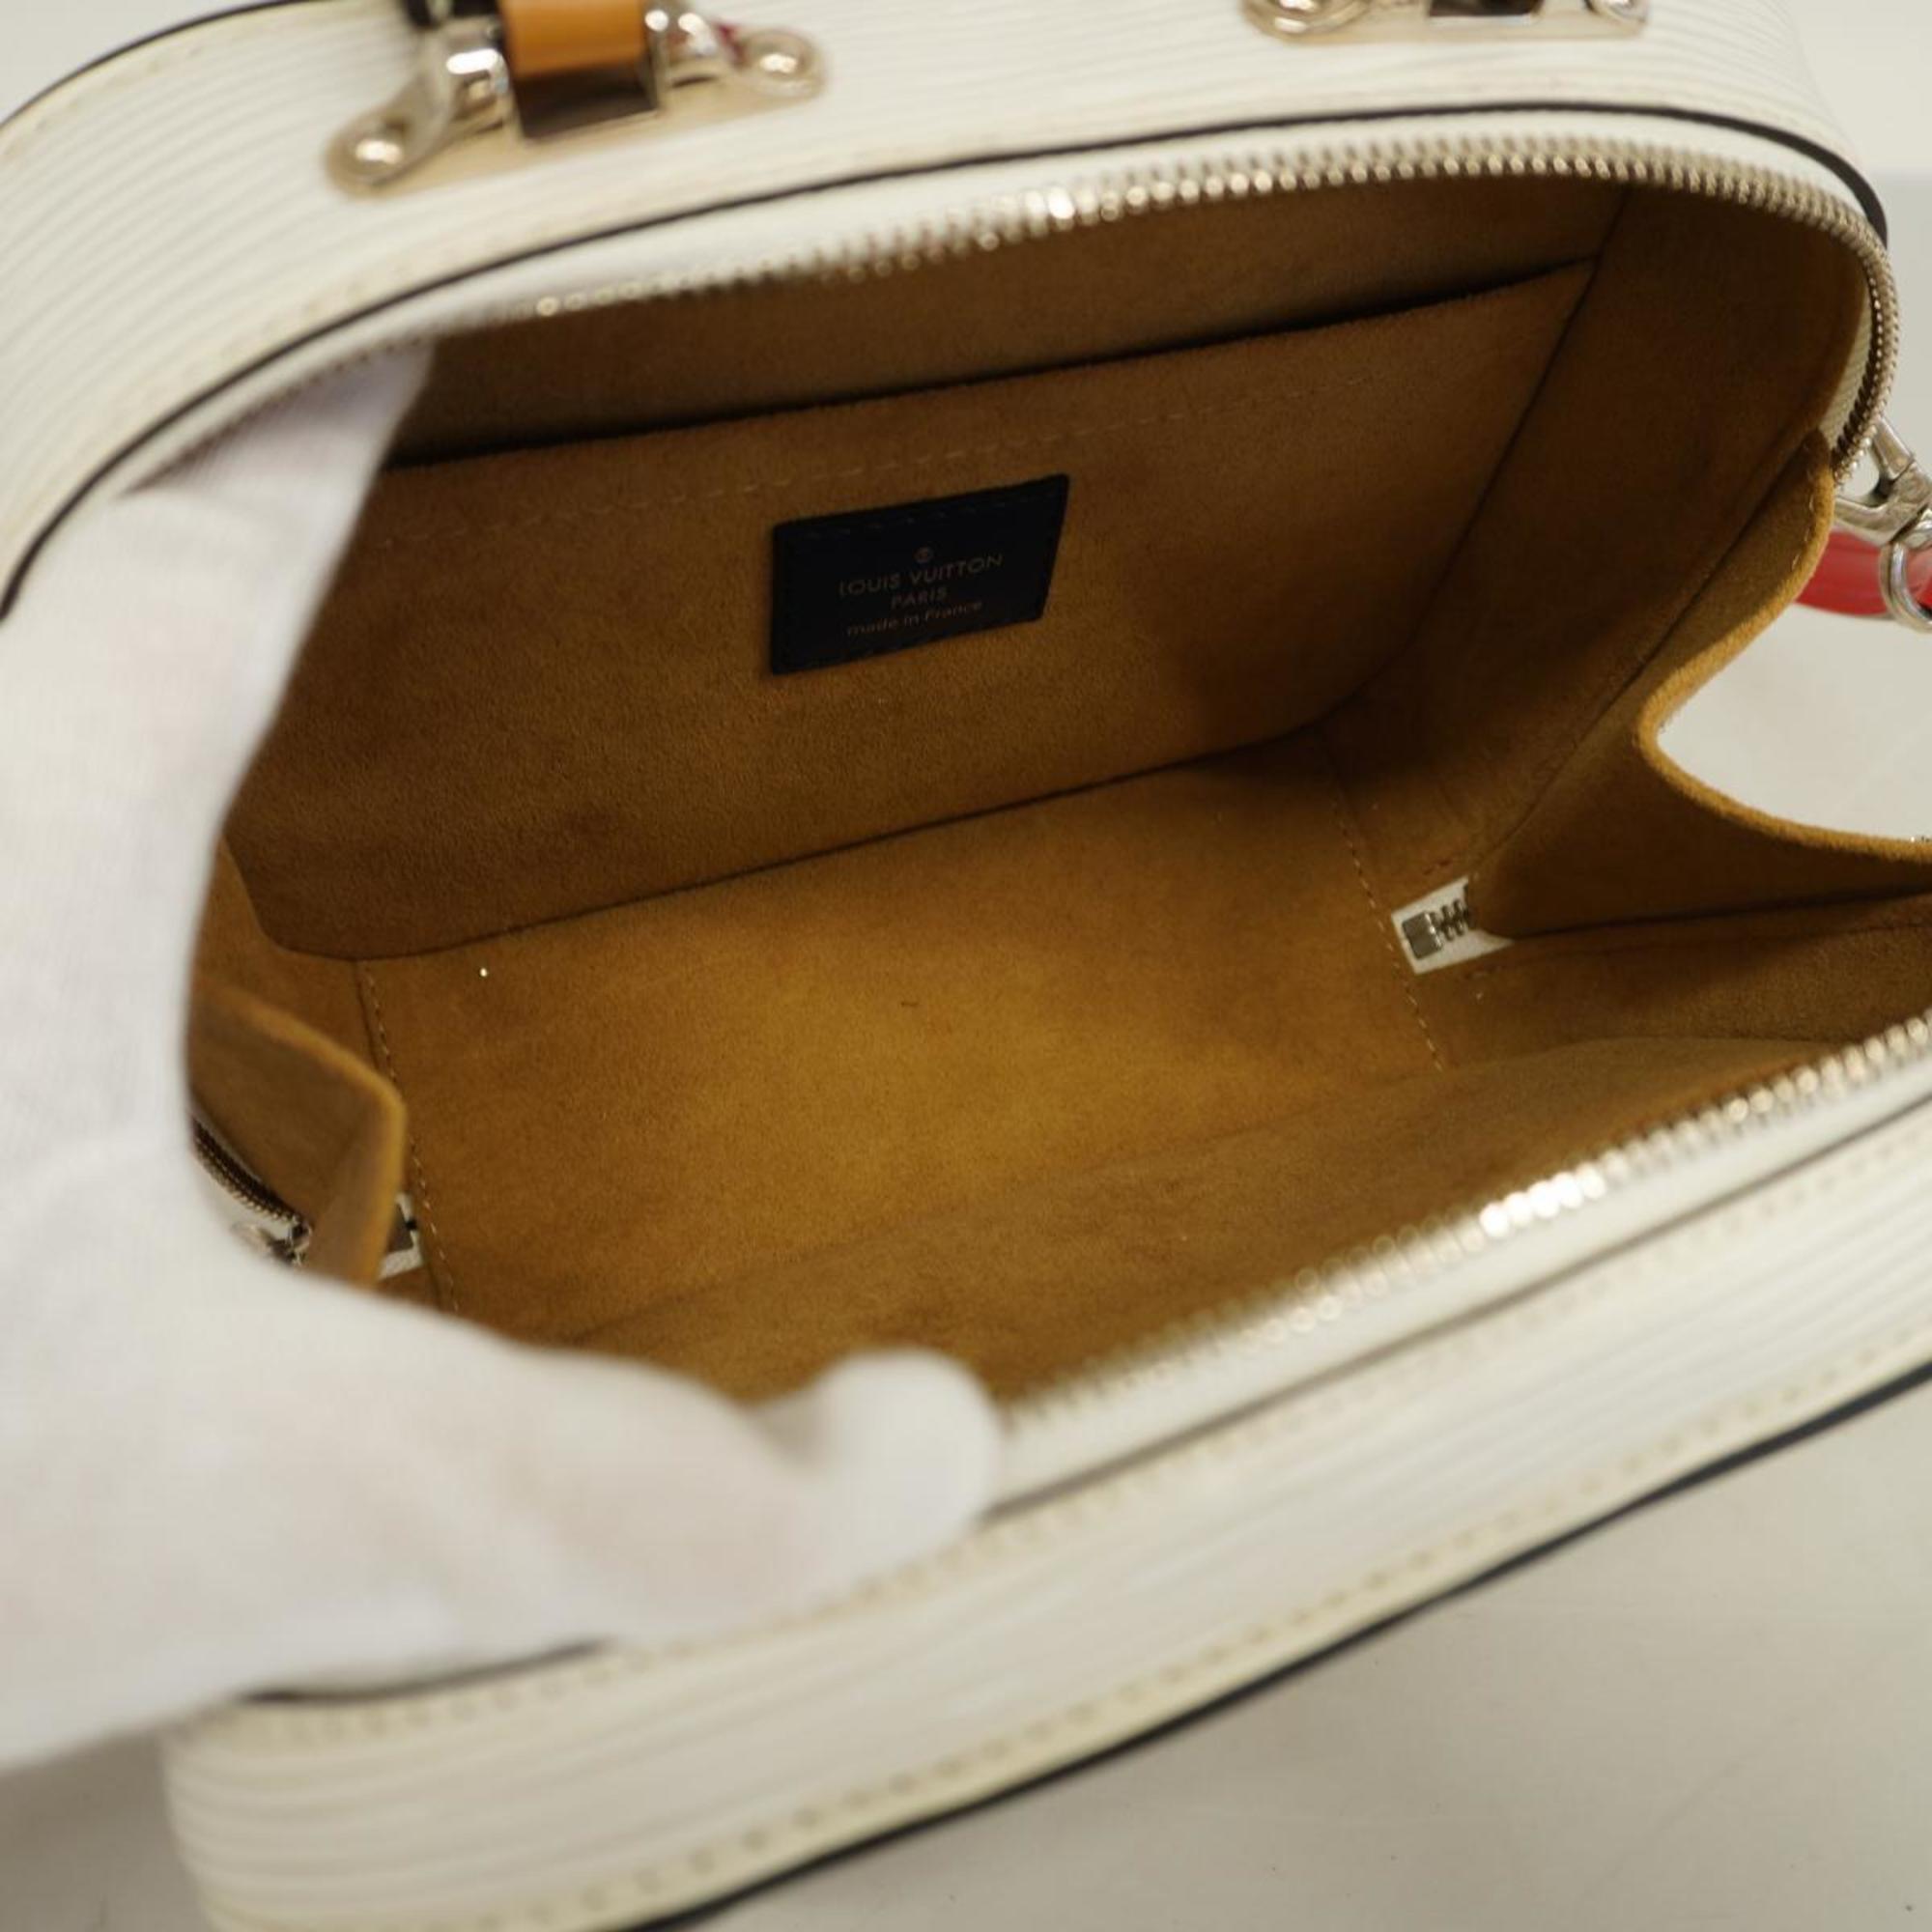 ルイ・ヴィトン(Louis Vuitton) ルイ・ヴィトン ハンドバッグ エピ ヴァリゼットPM M55470 ホワイト ネイビーレディース